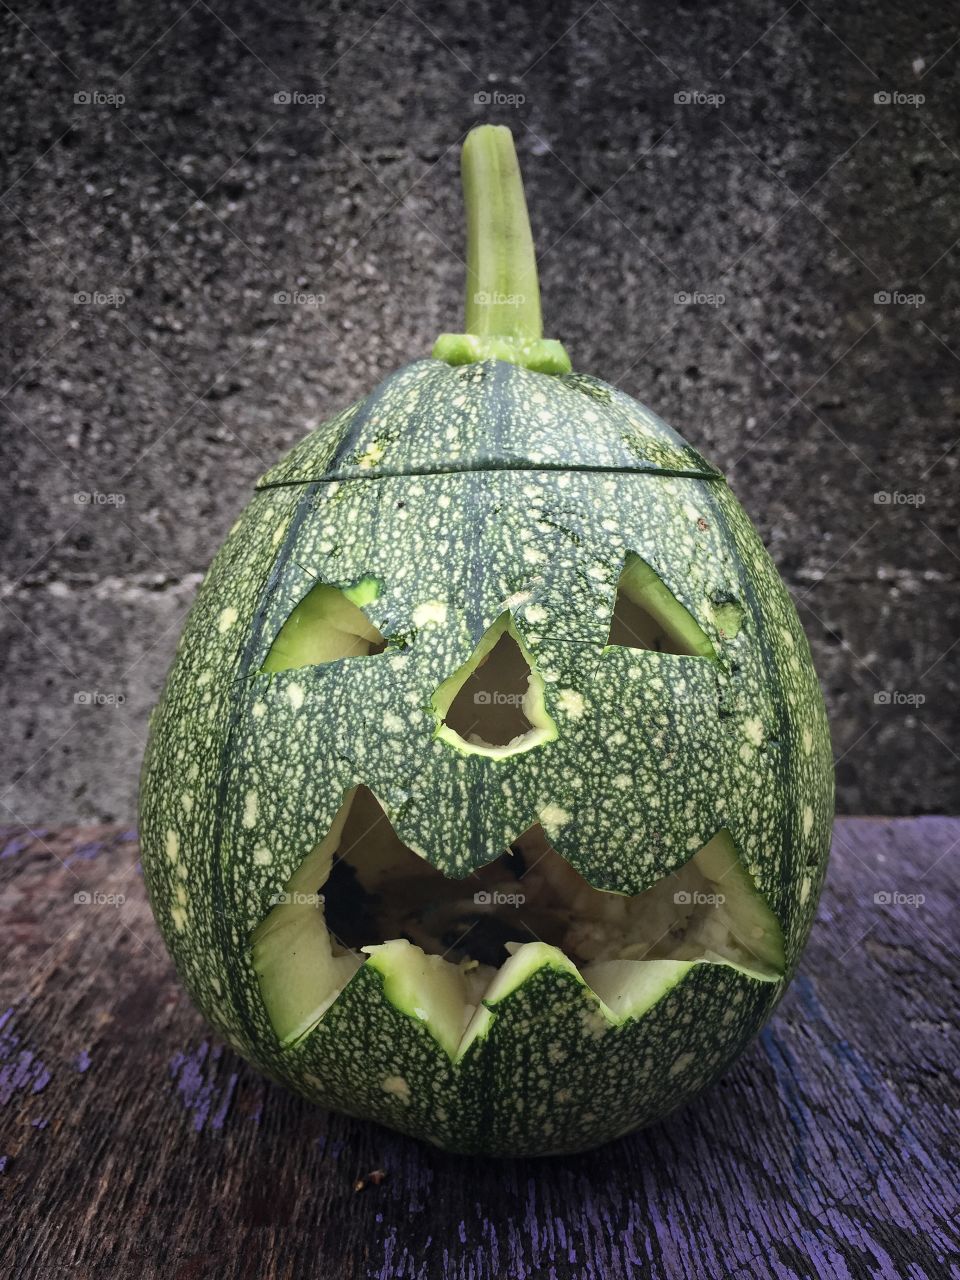 Halloween pumpkin
